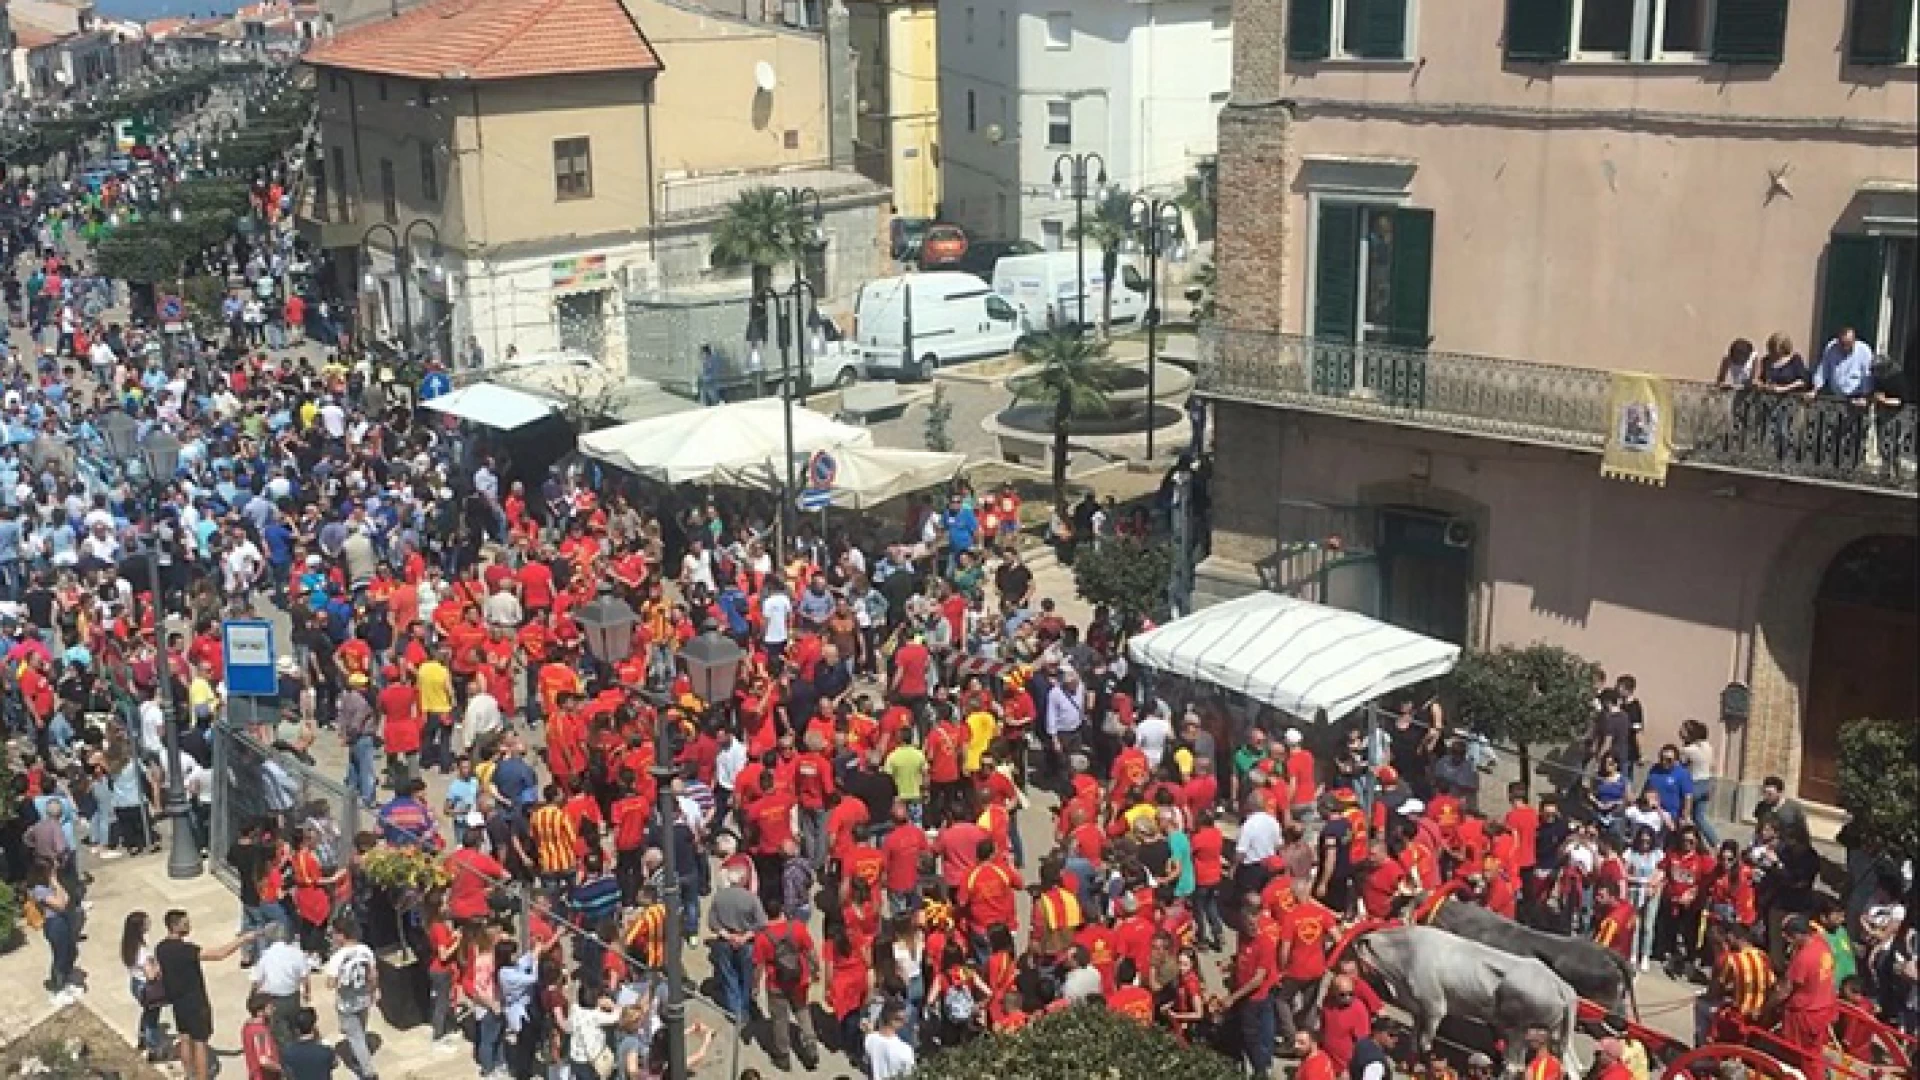 San Martino in Pensilis: la Carrese salta all’ultimo minuto, tensione e proteste in paese.